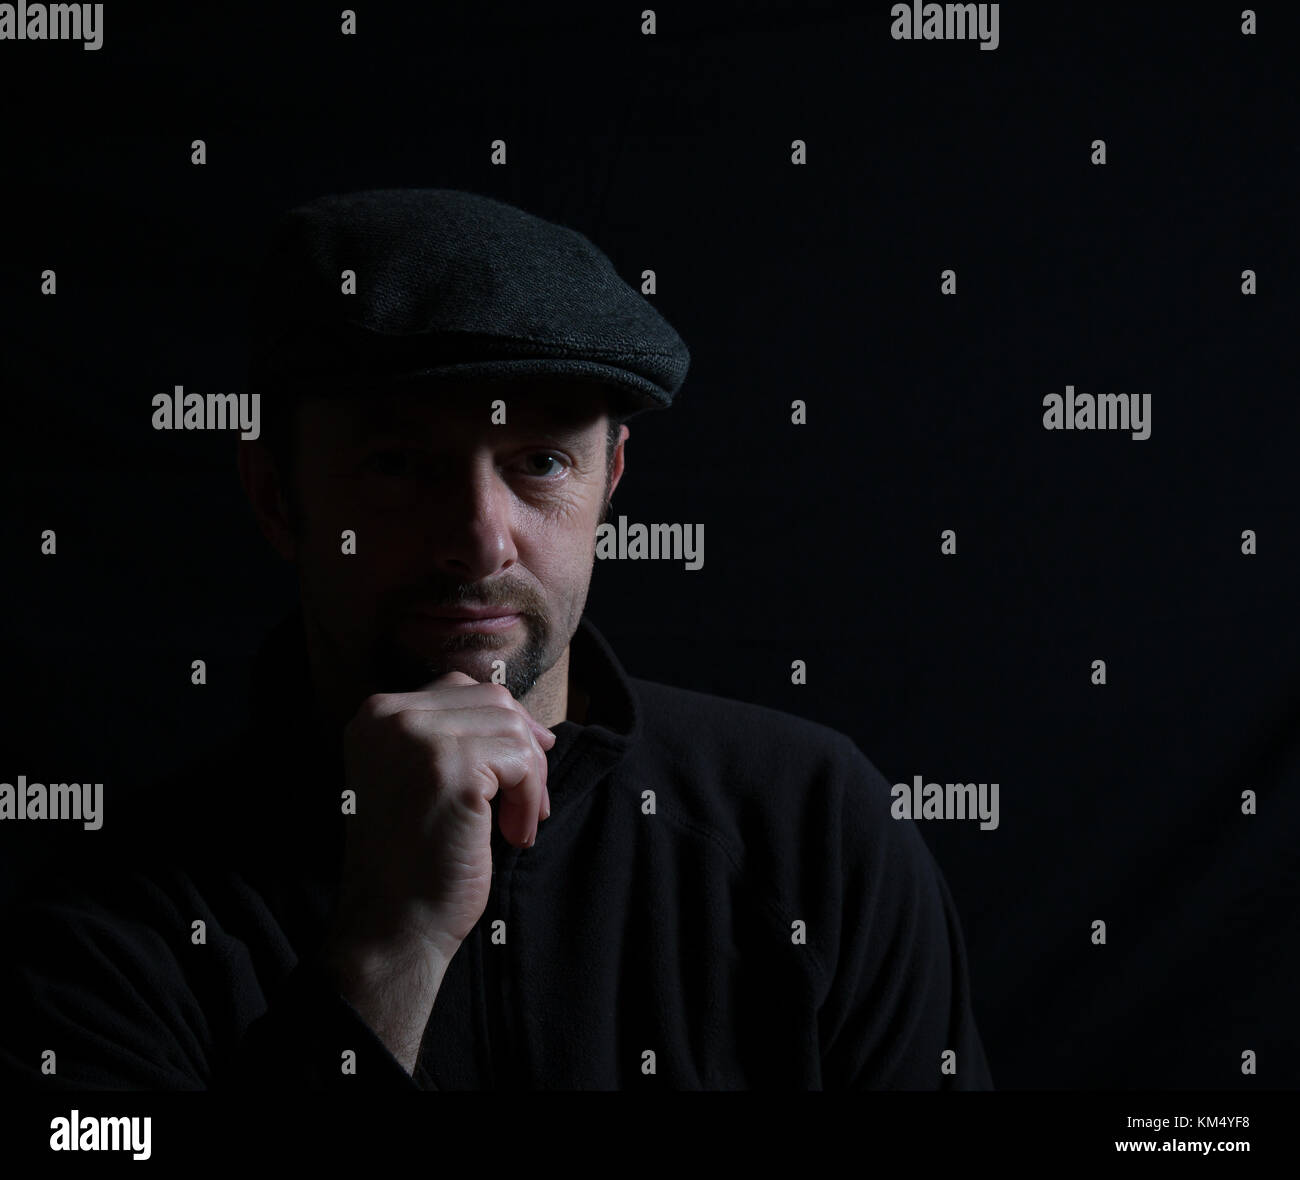 Ritratto artistico dell'uomo isolato con cappuccio scuro, viso mezzo-illuminato, con la telecamera, mano sul mento, sotto i riflettori. L'illuminazione sottile crea un'immagine ombreggiata. Foto Stock